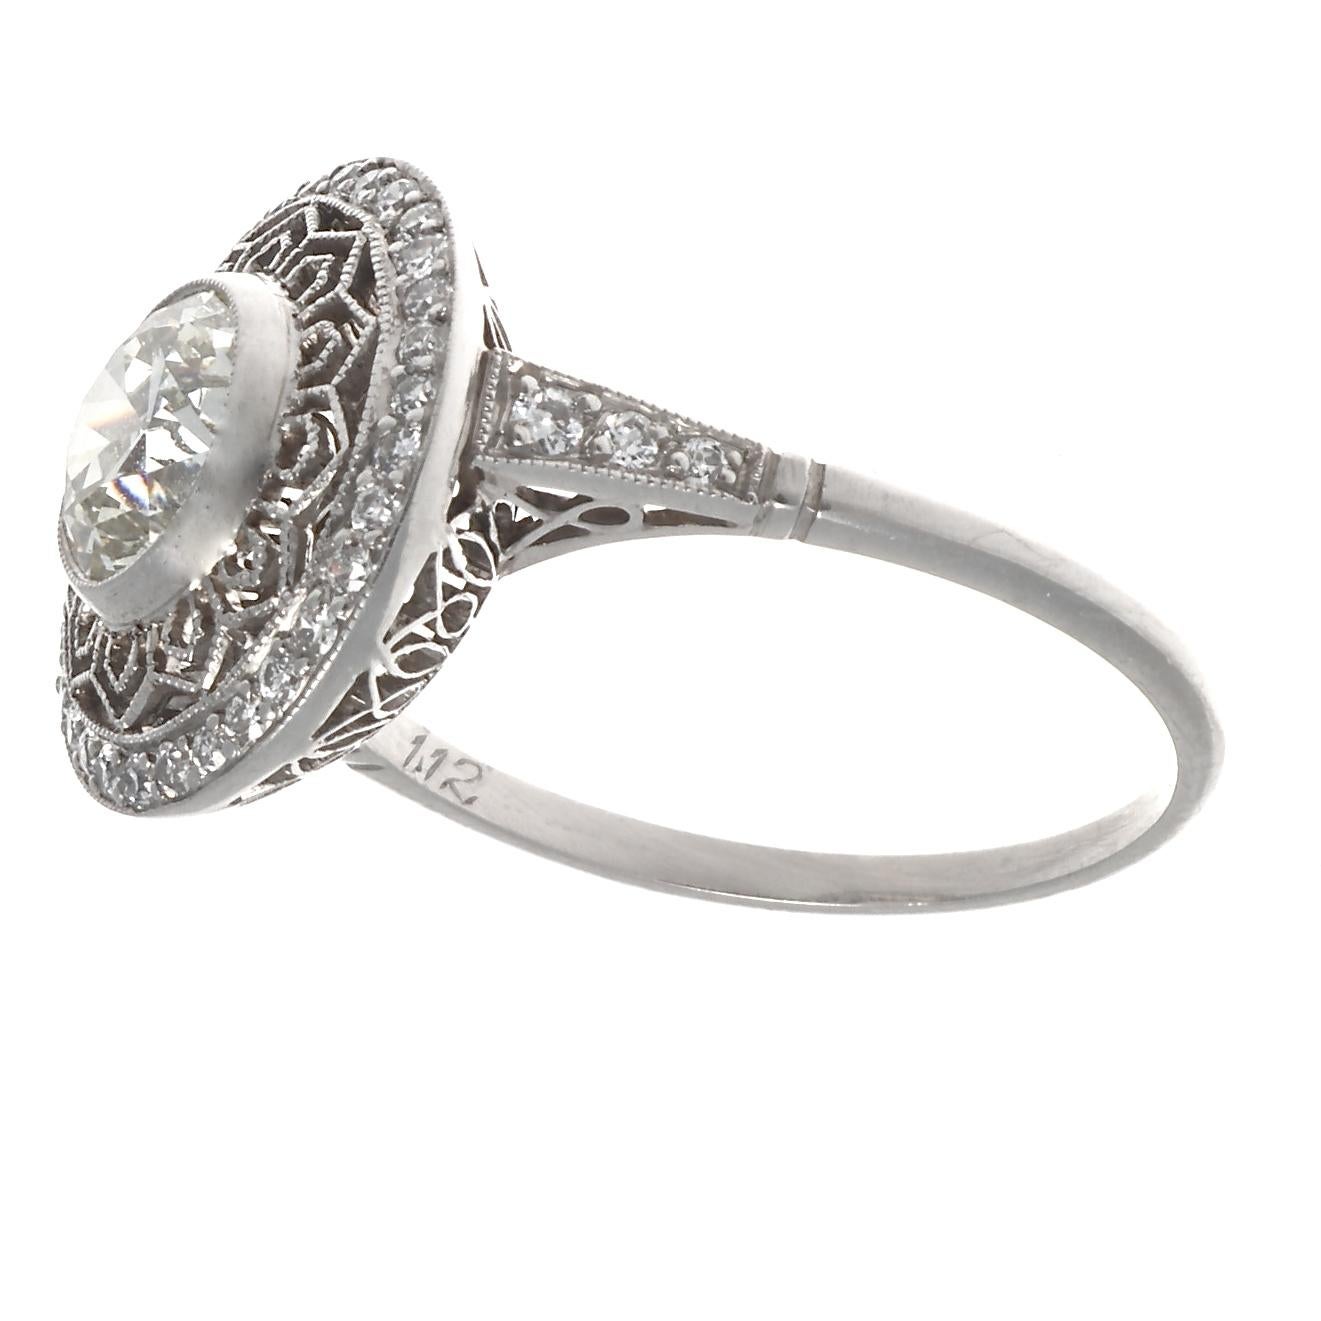 Old European Cut Art Deco Inspired Diamond Platinum Ring